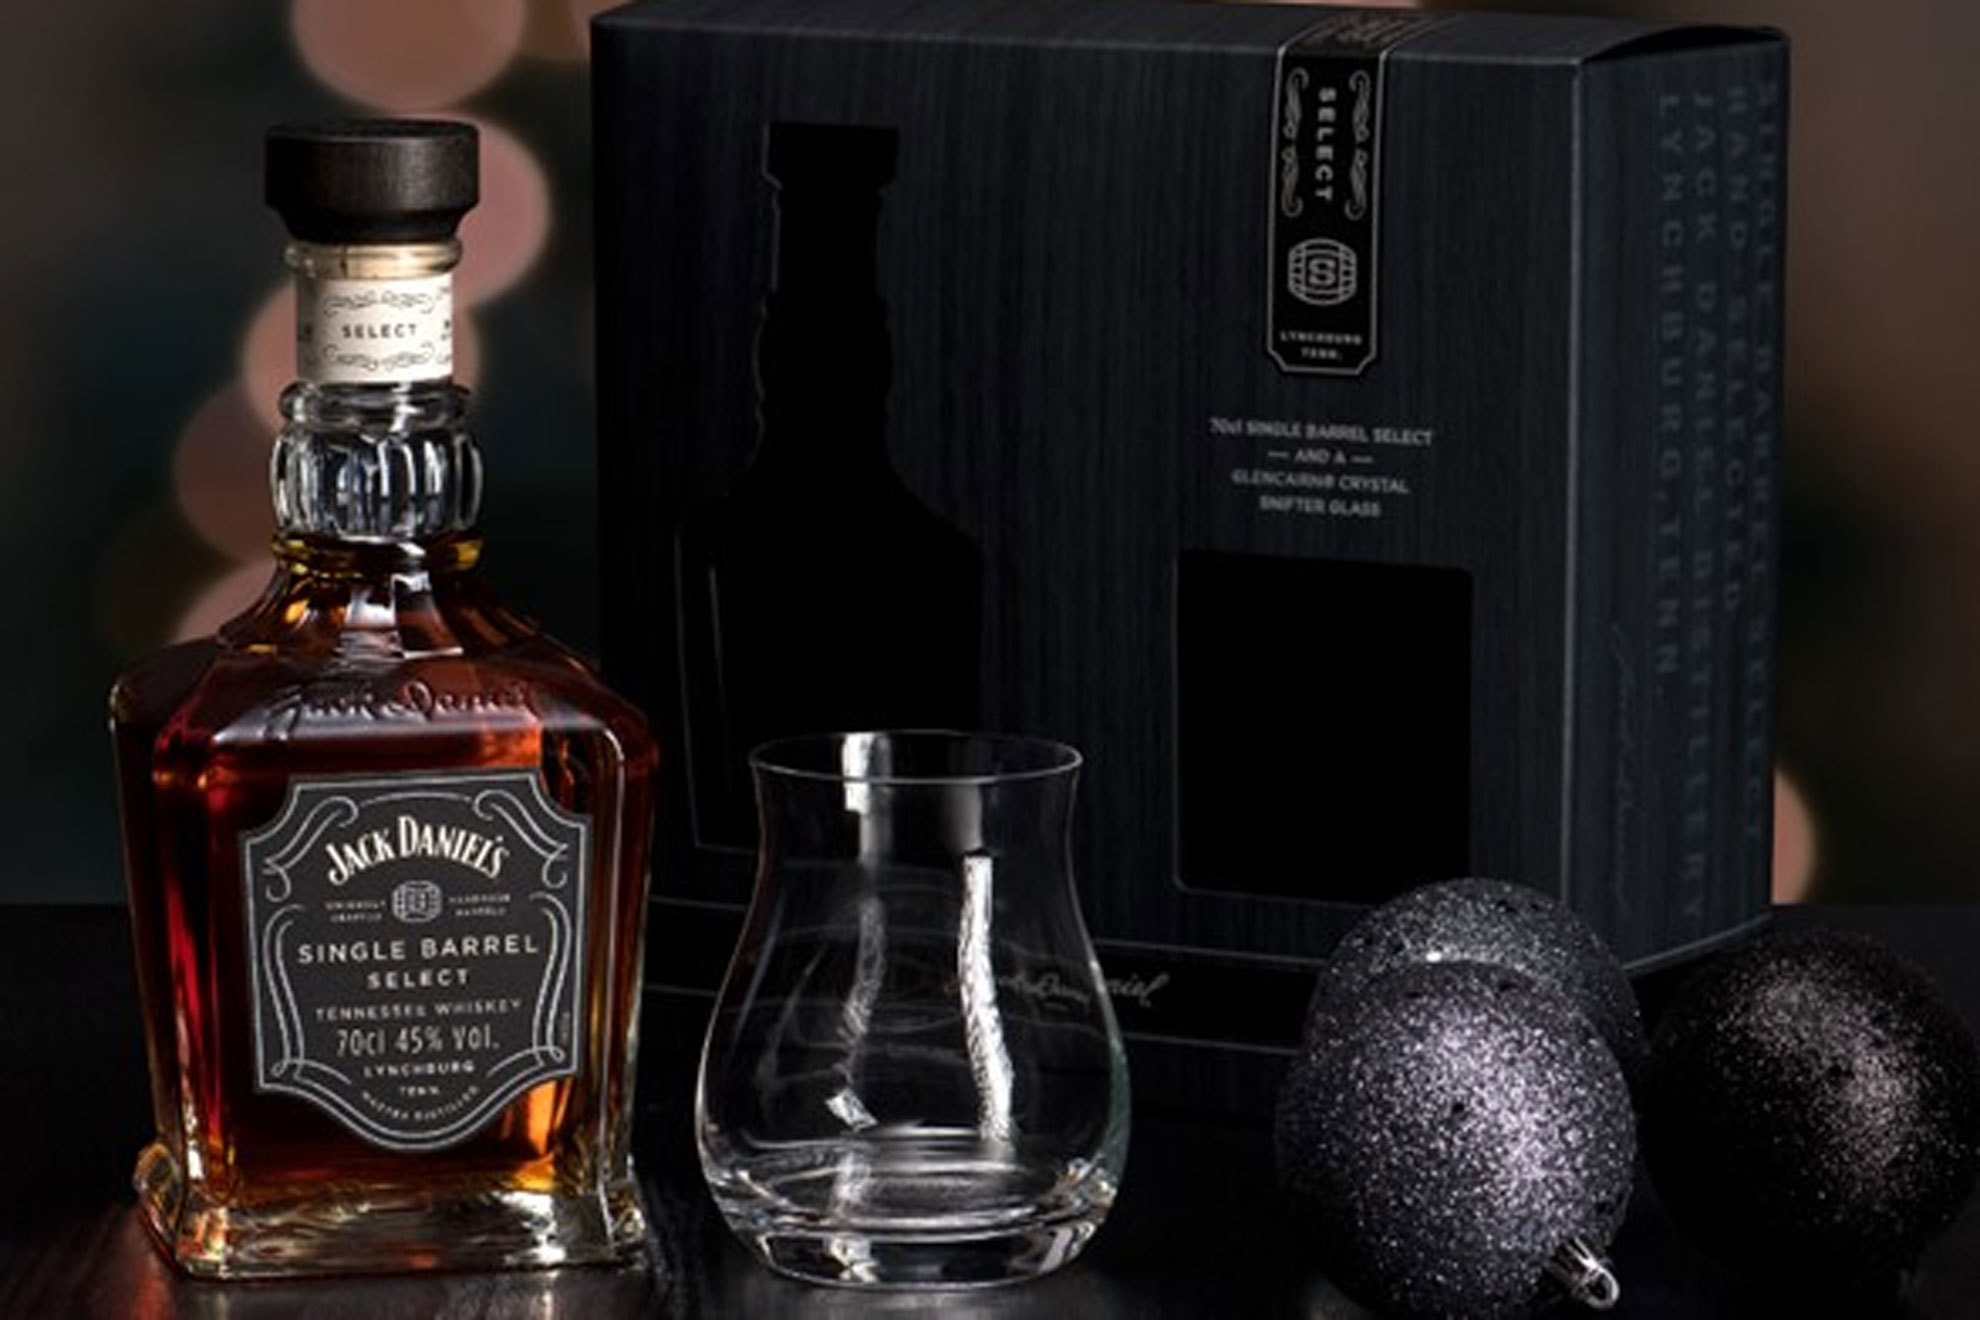 Descubre los packs especiales de Jack Daniel's para regalar esta Navidad